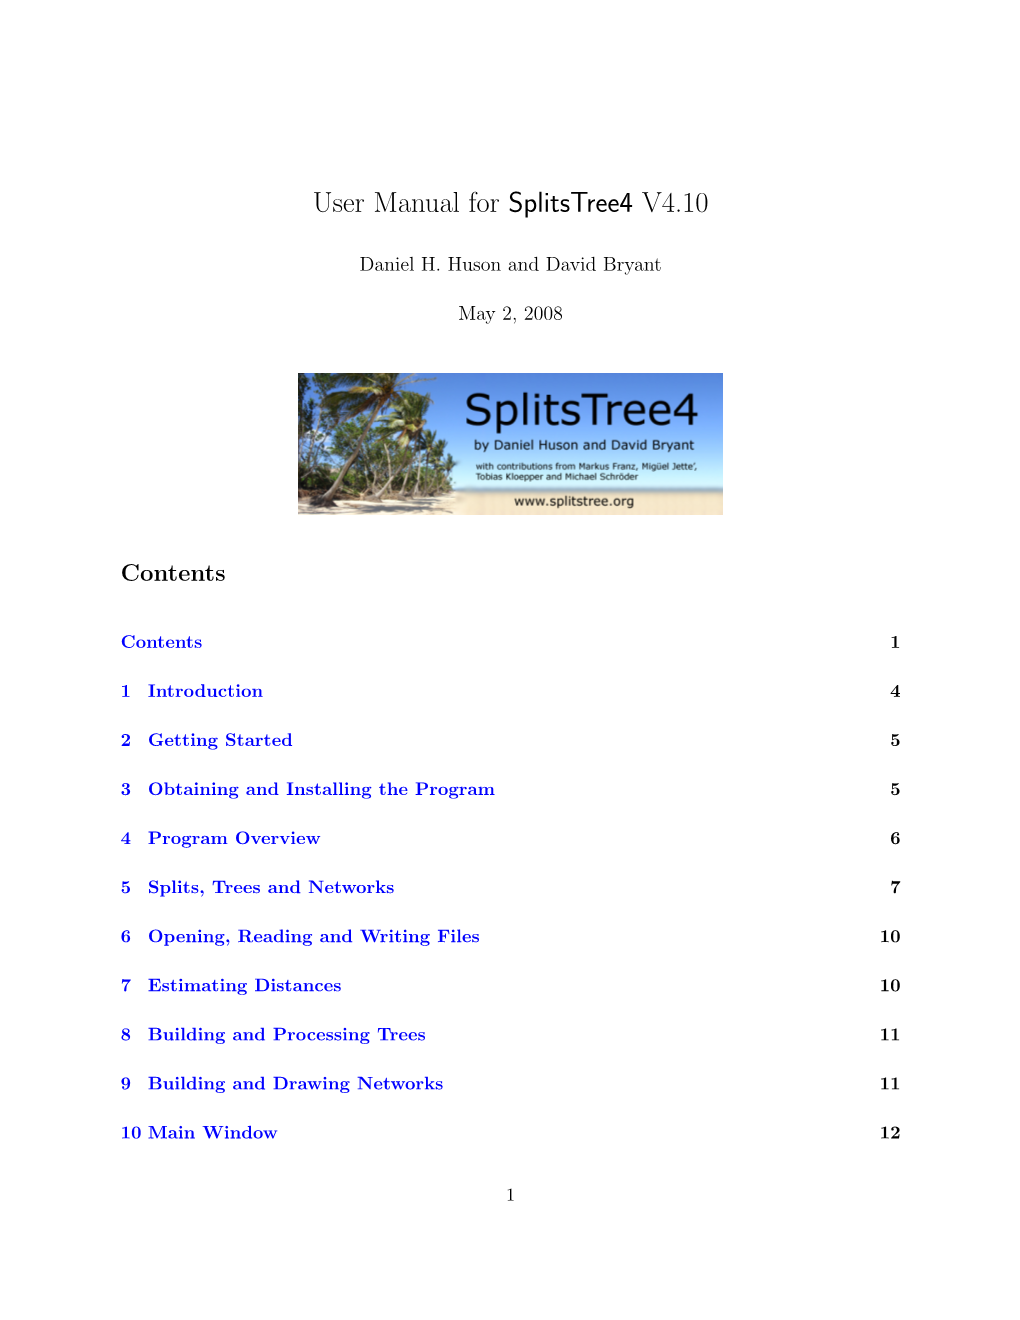 User Manual for Splitstree4 V4.10